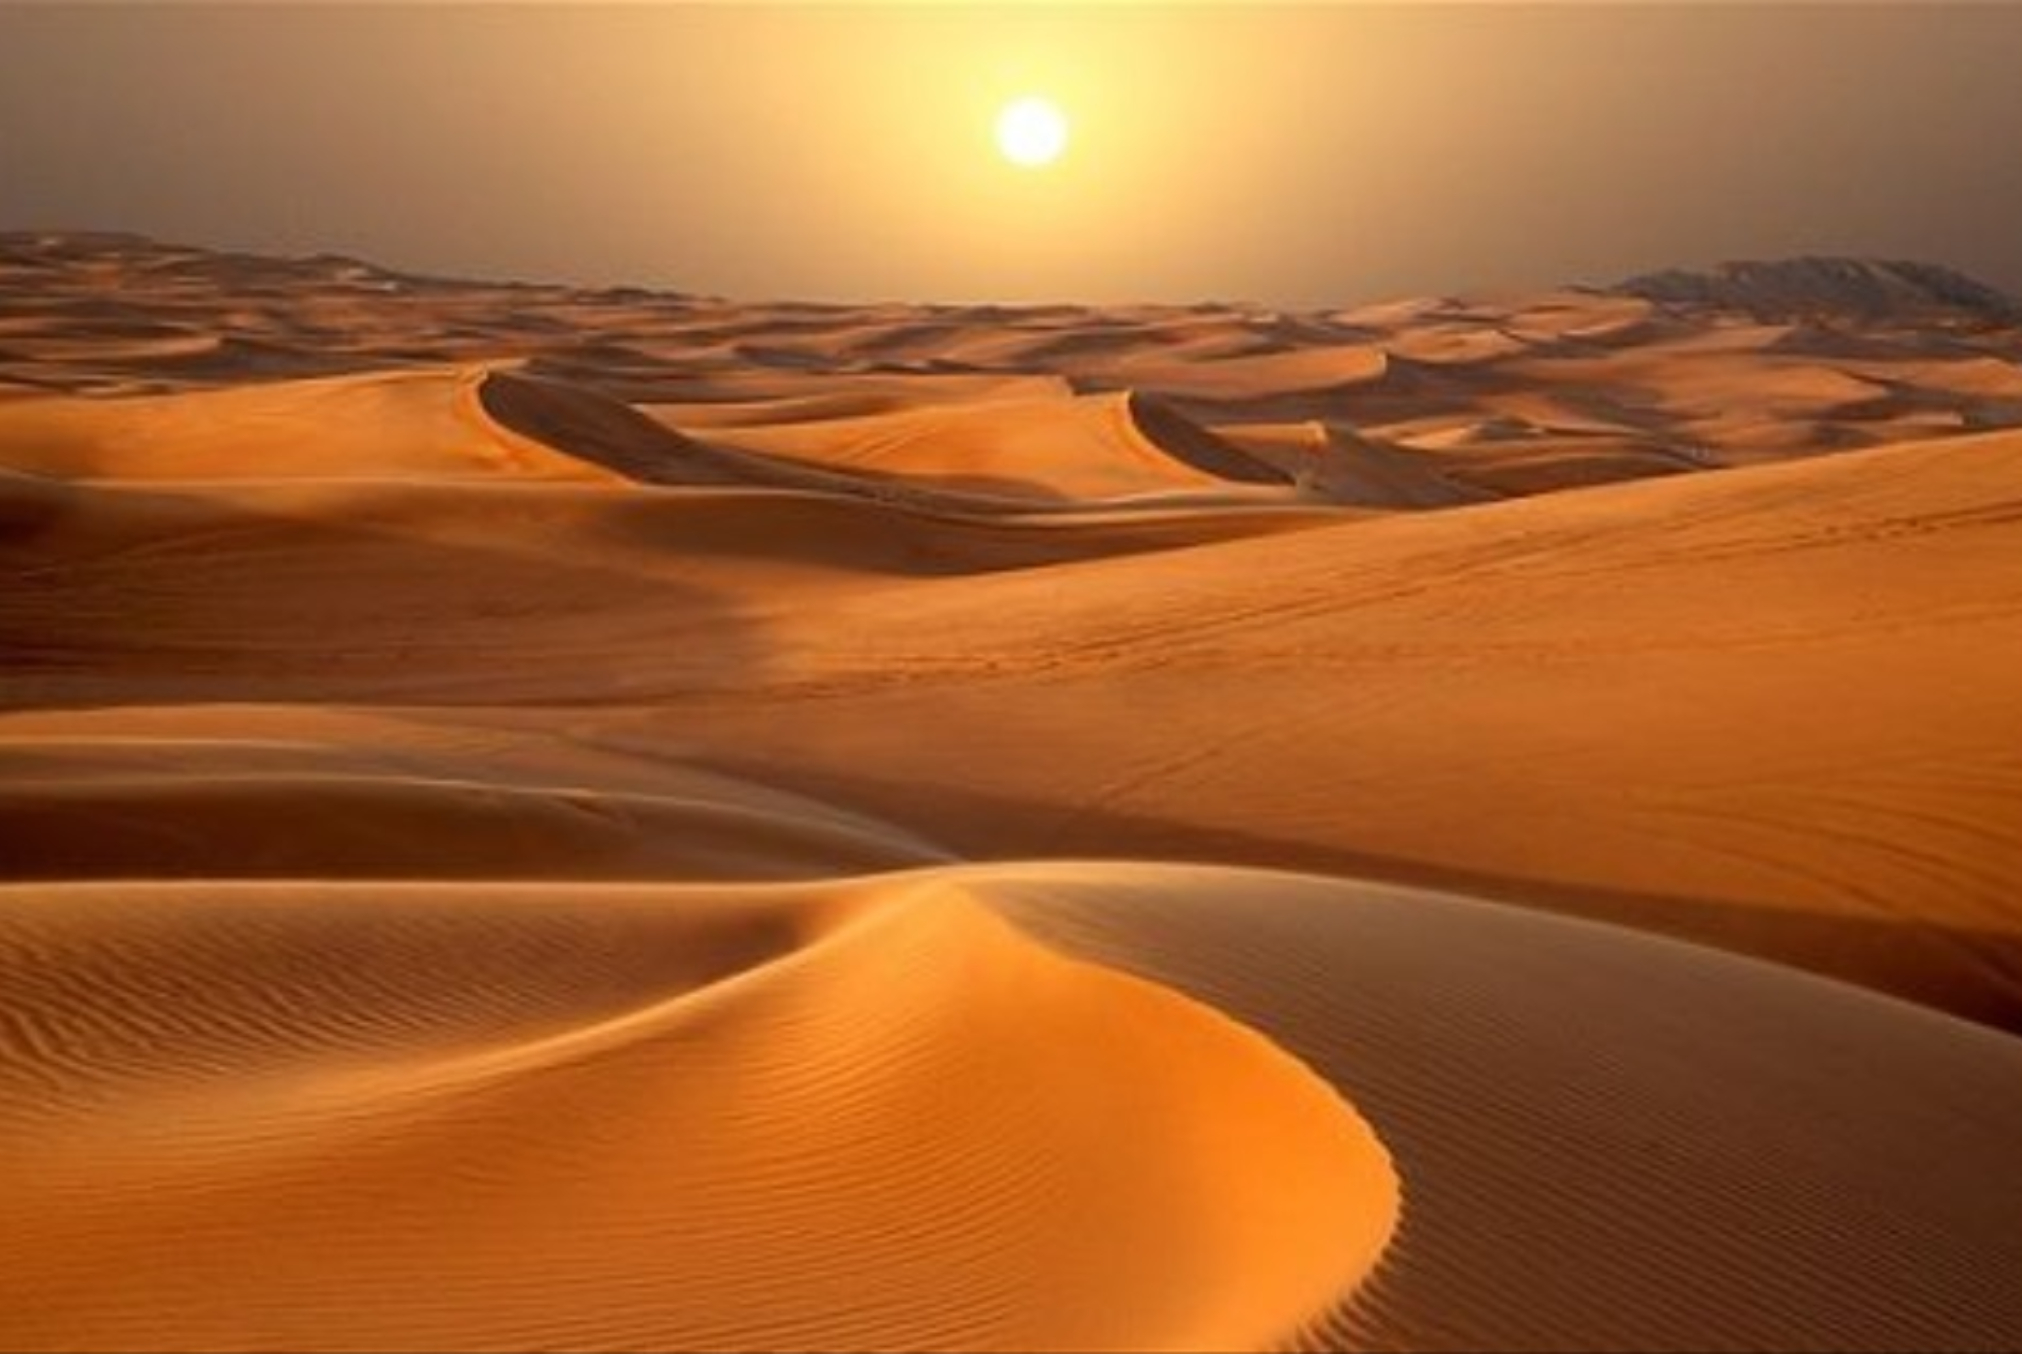 Τεστ προσωπικότητας: Η ιστορία της ερήμου θα σου αποκαλύψει τον κρυμμένο εσωτερικό σου κόσμο